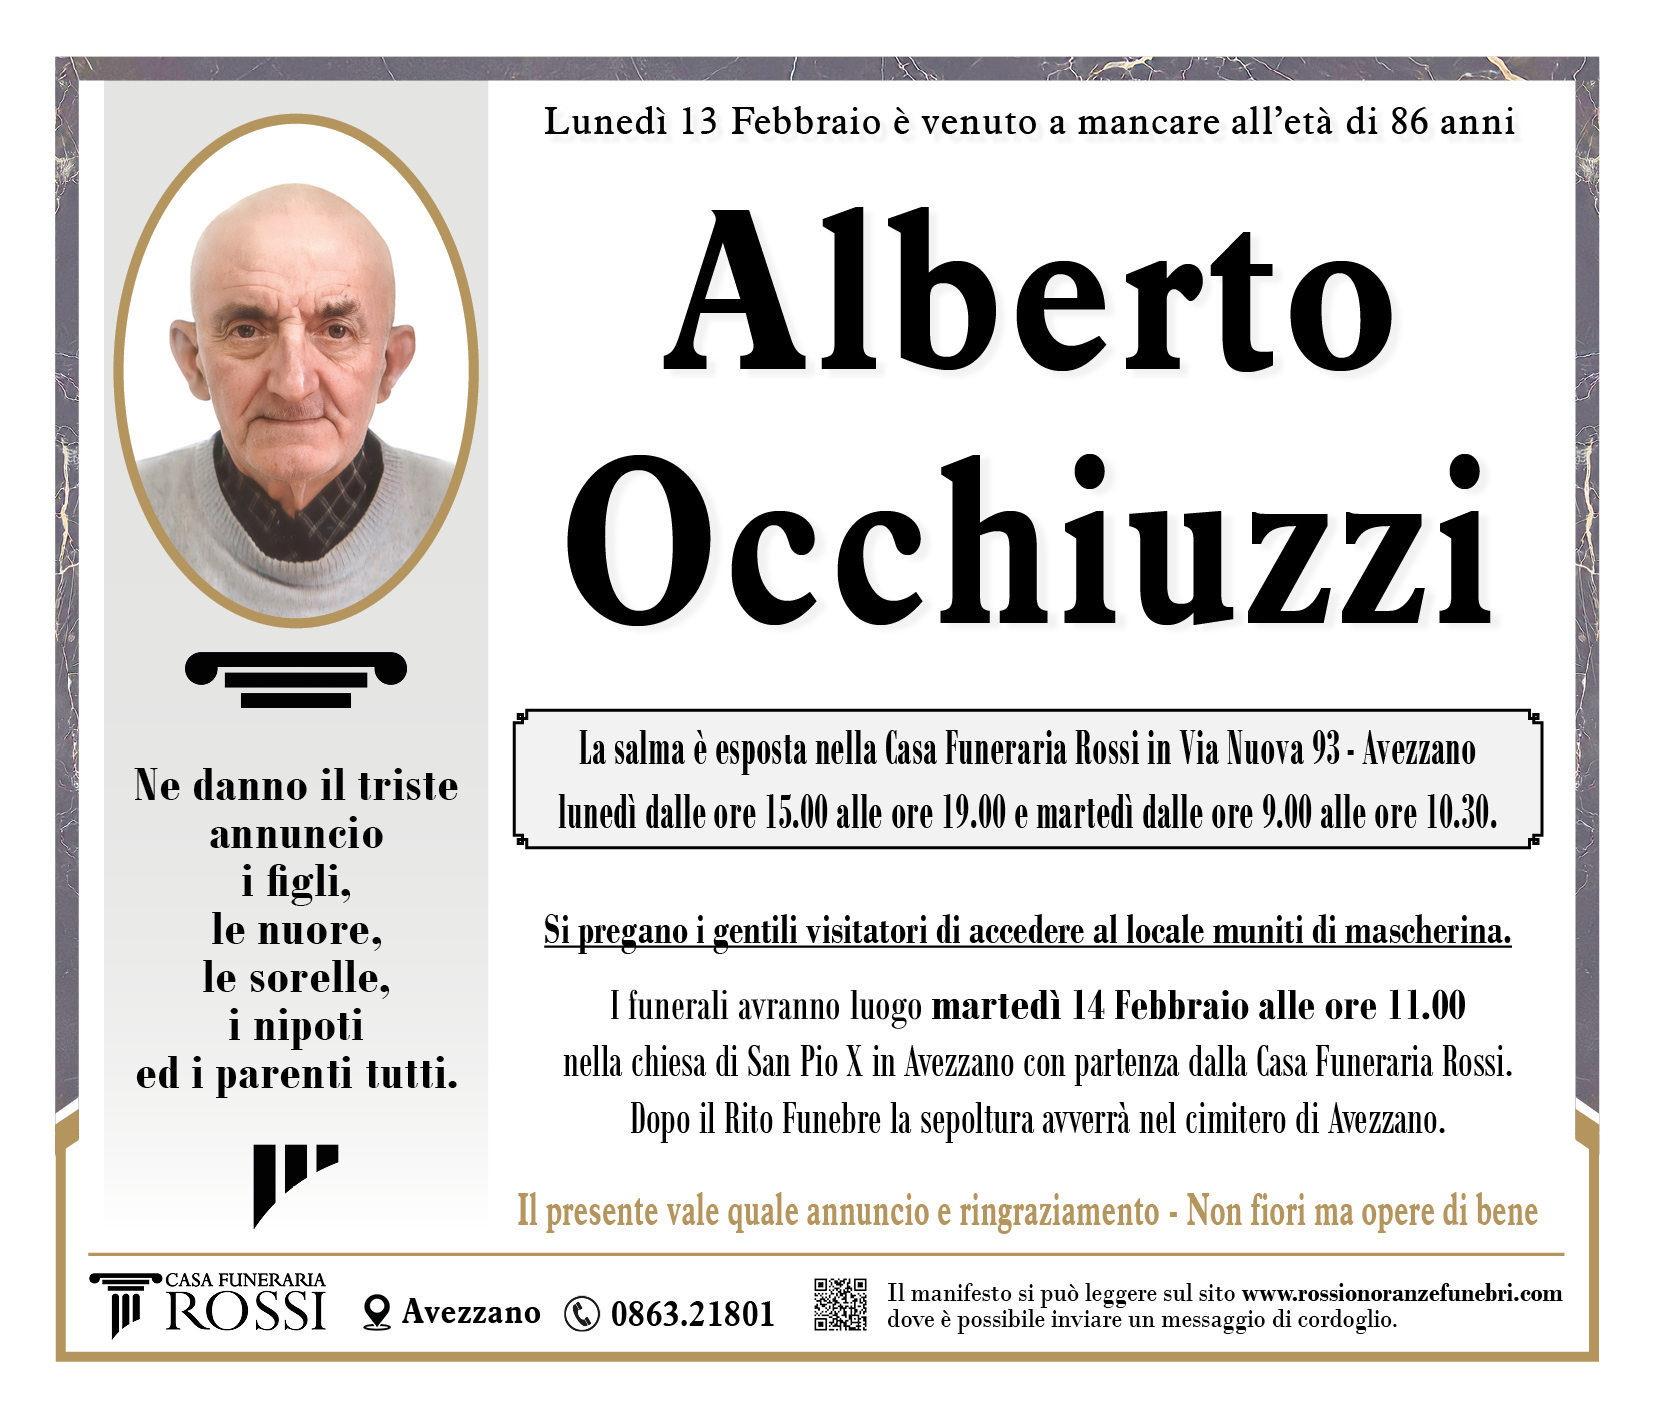 Alberto Occhiuzzi